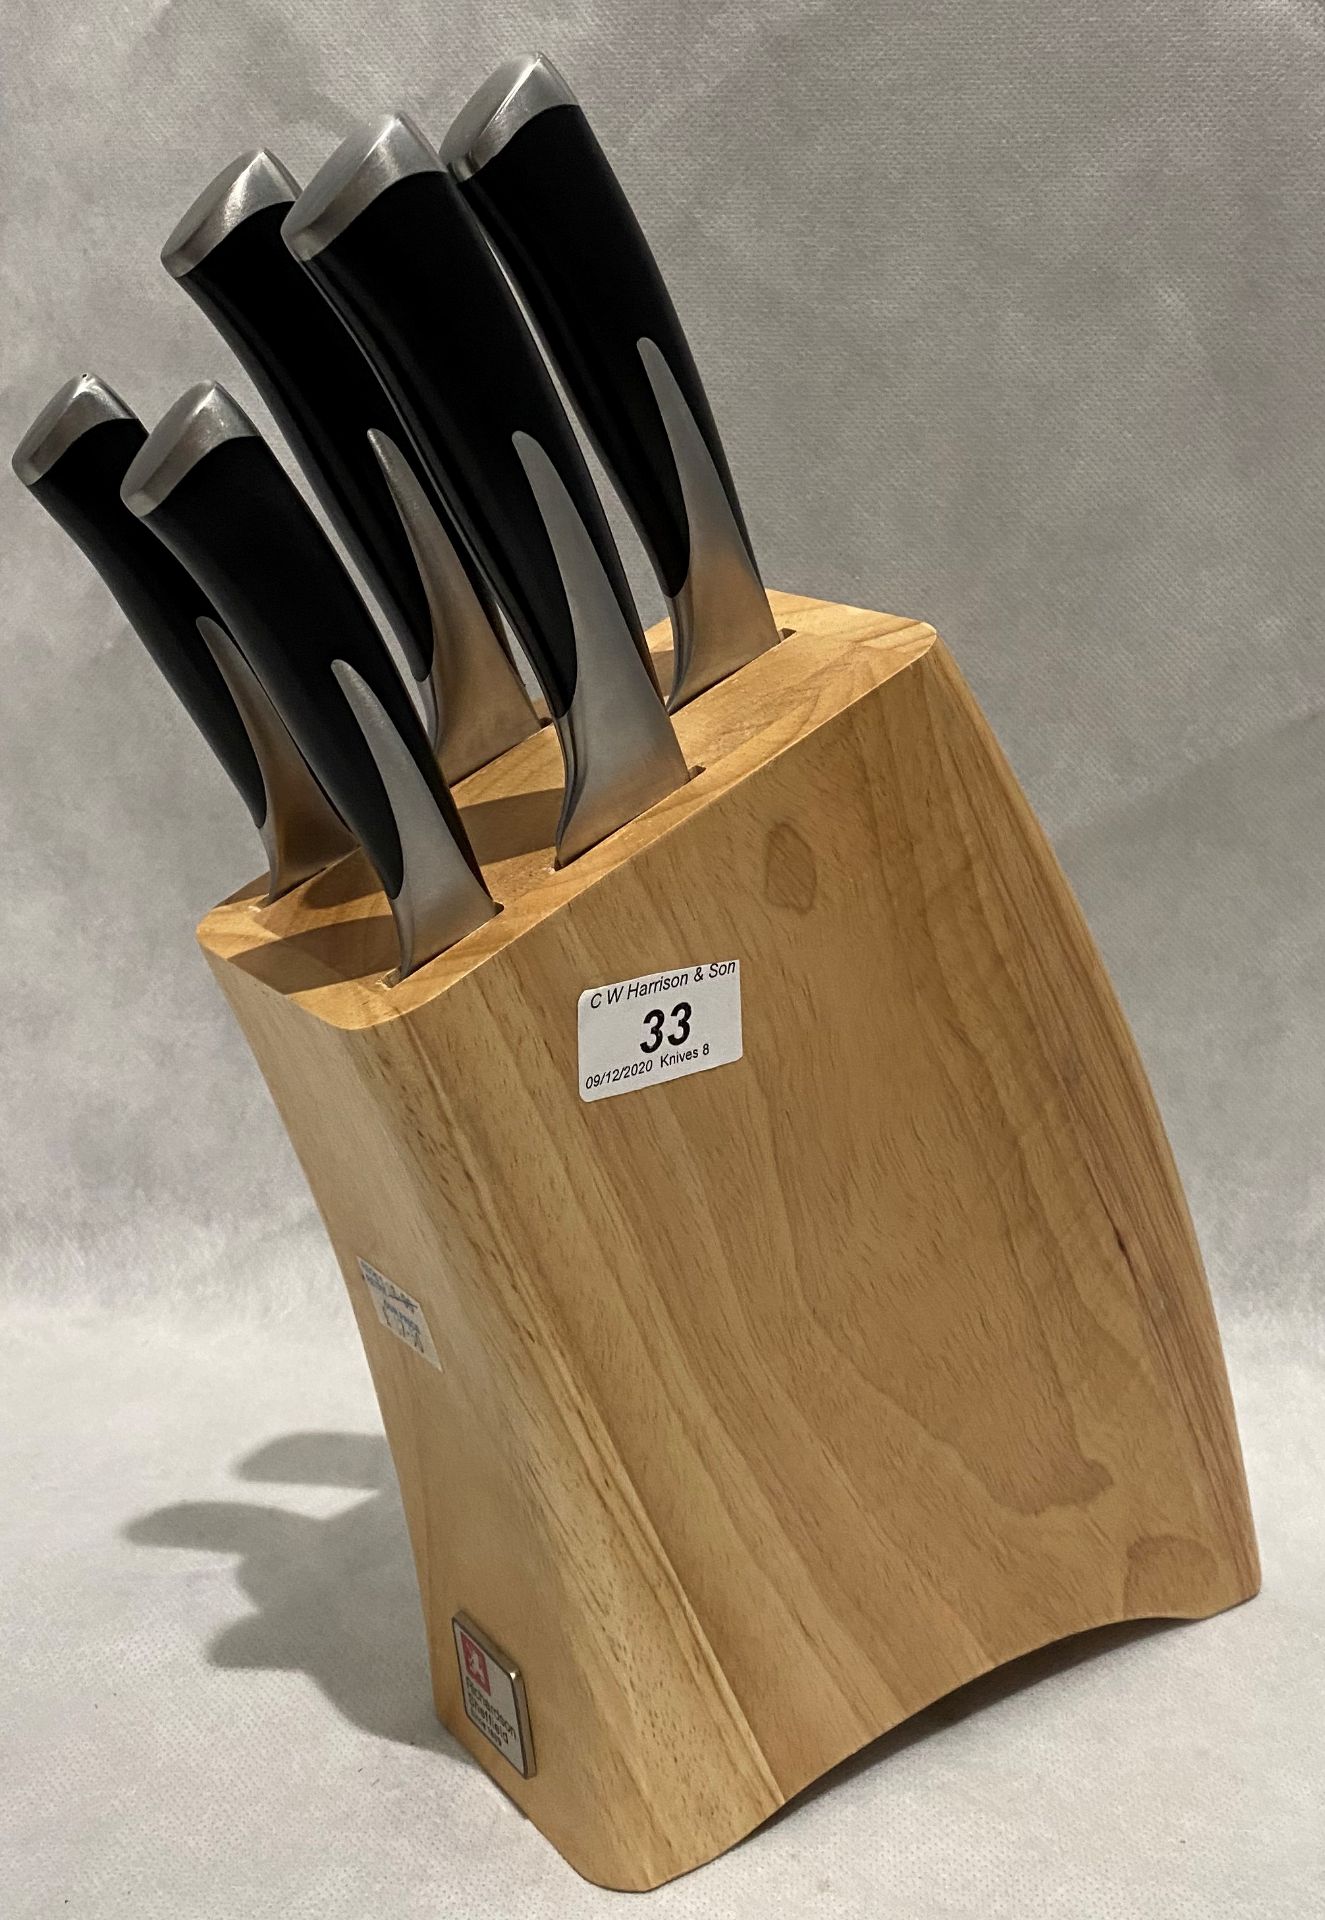 A Richardson Sheffield Kyu 5 piece knife